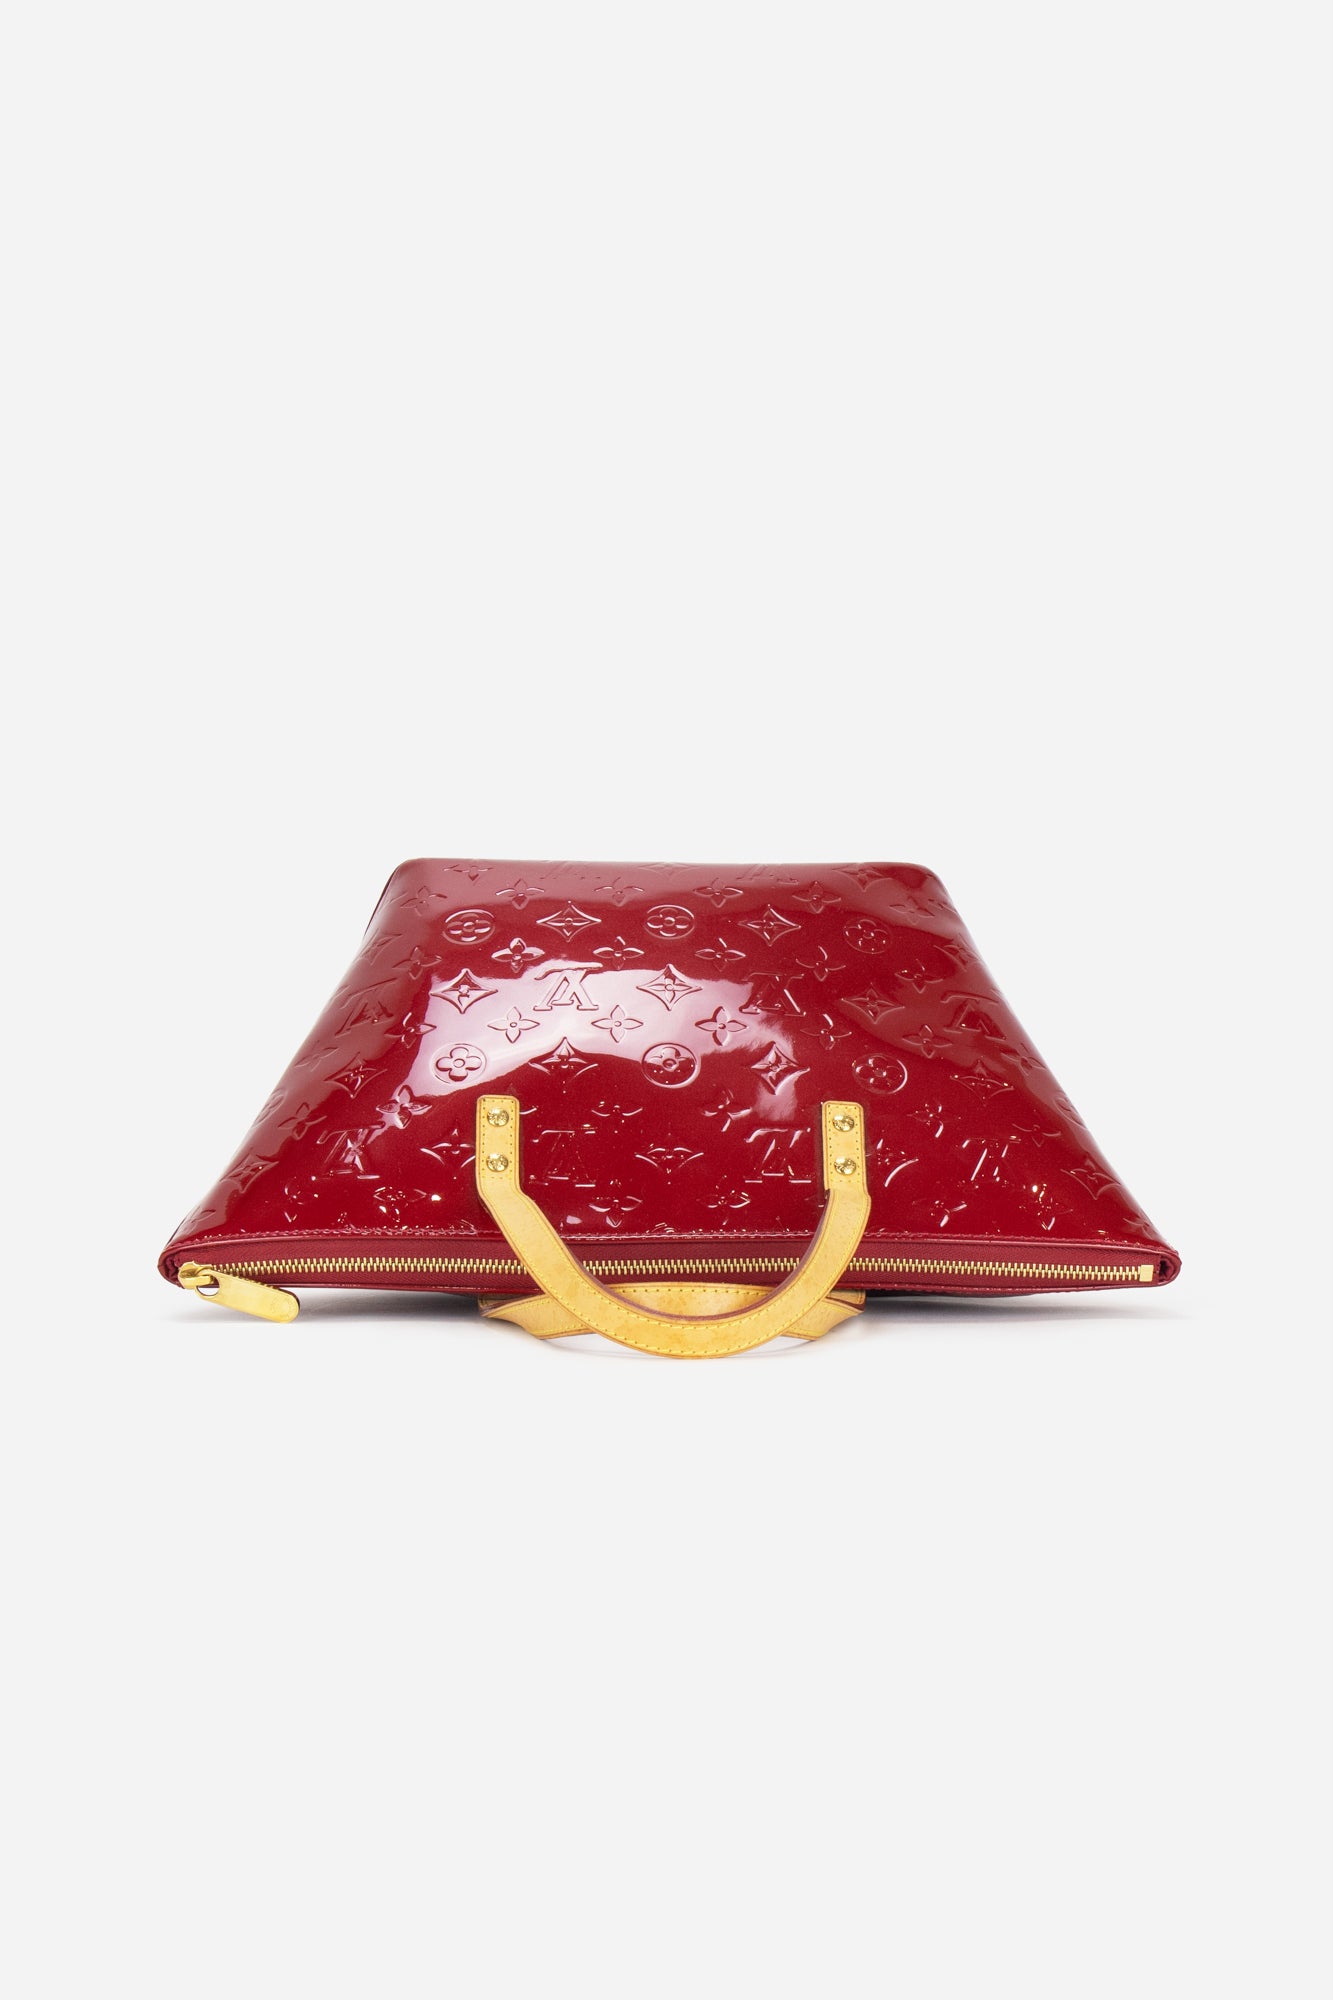 Louis Vuitton - Bellevue PM Monogram Vernis Leather Pomme D'Amour